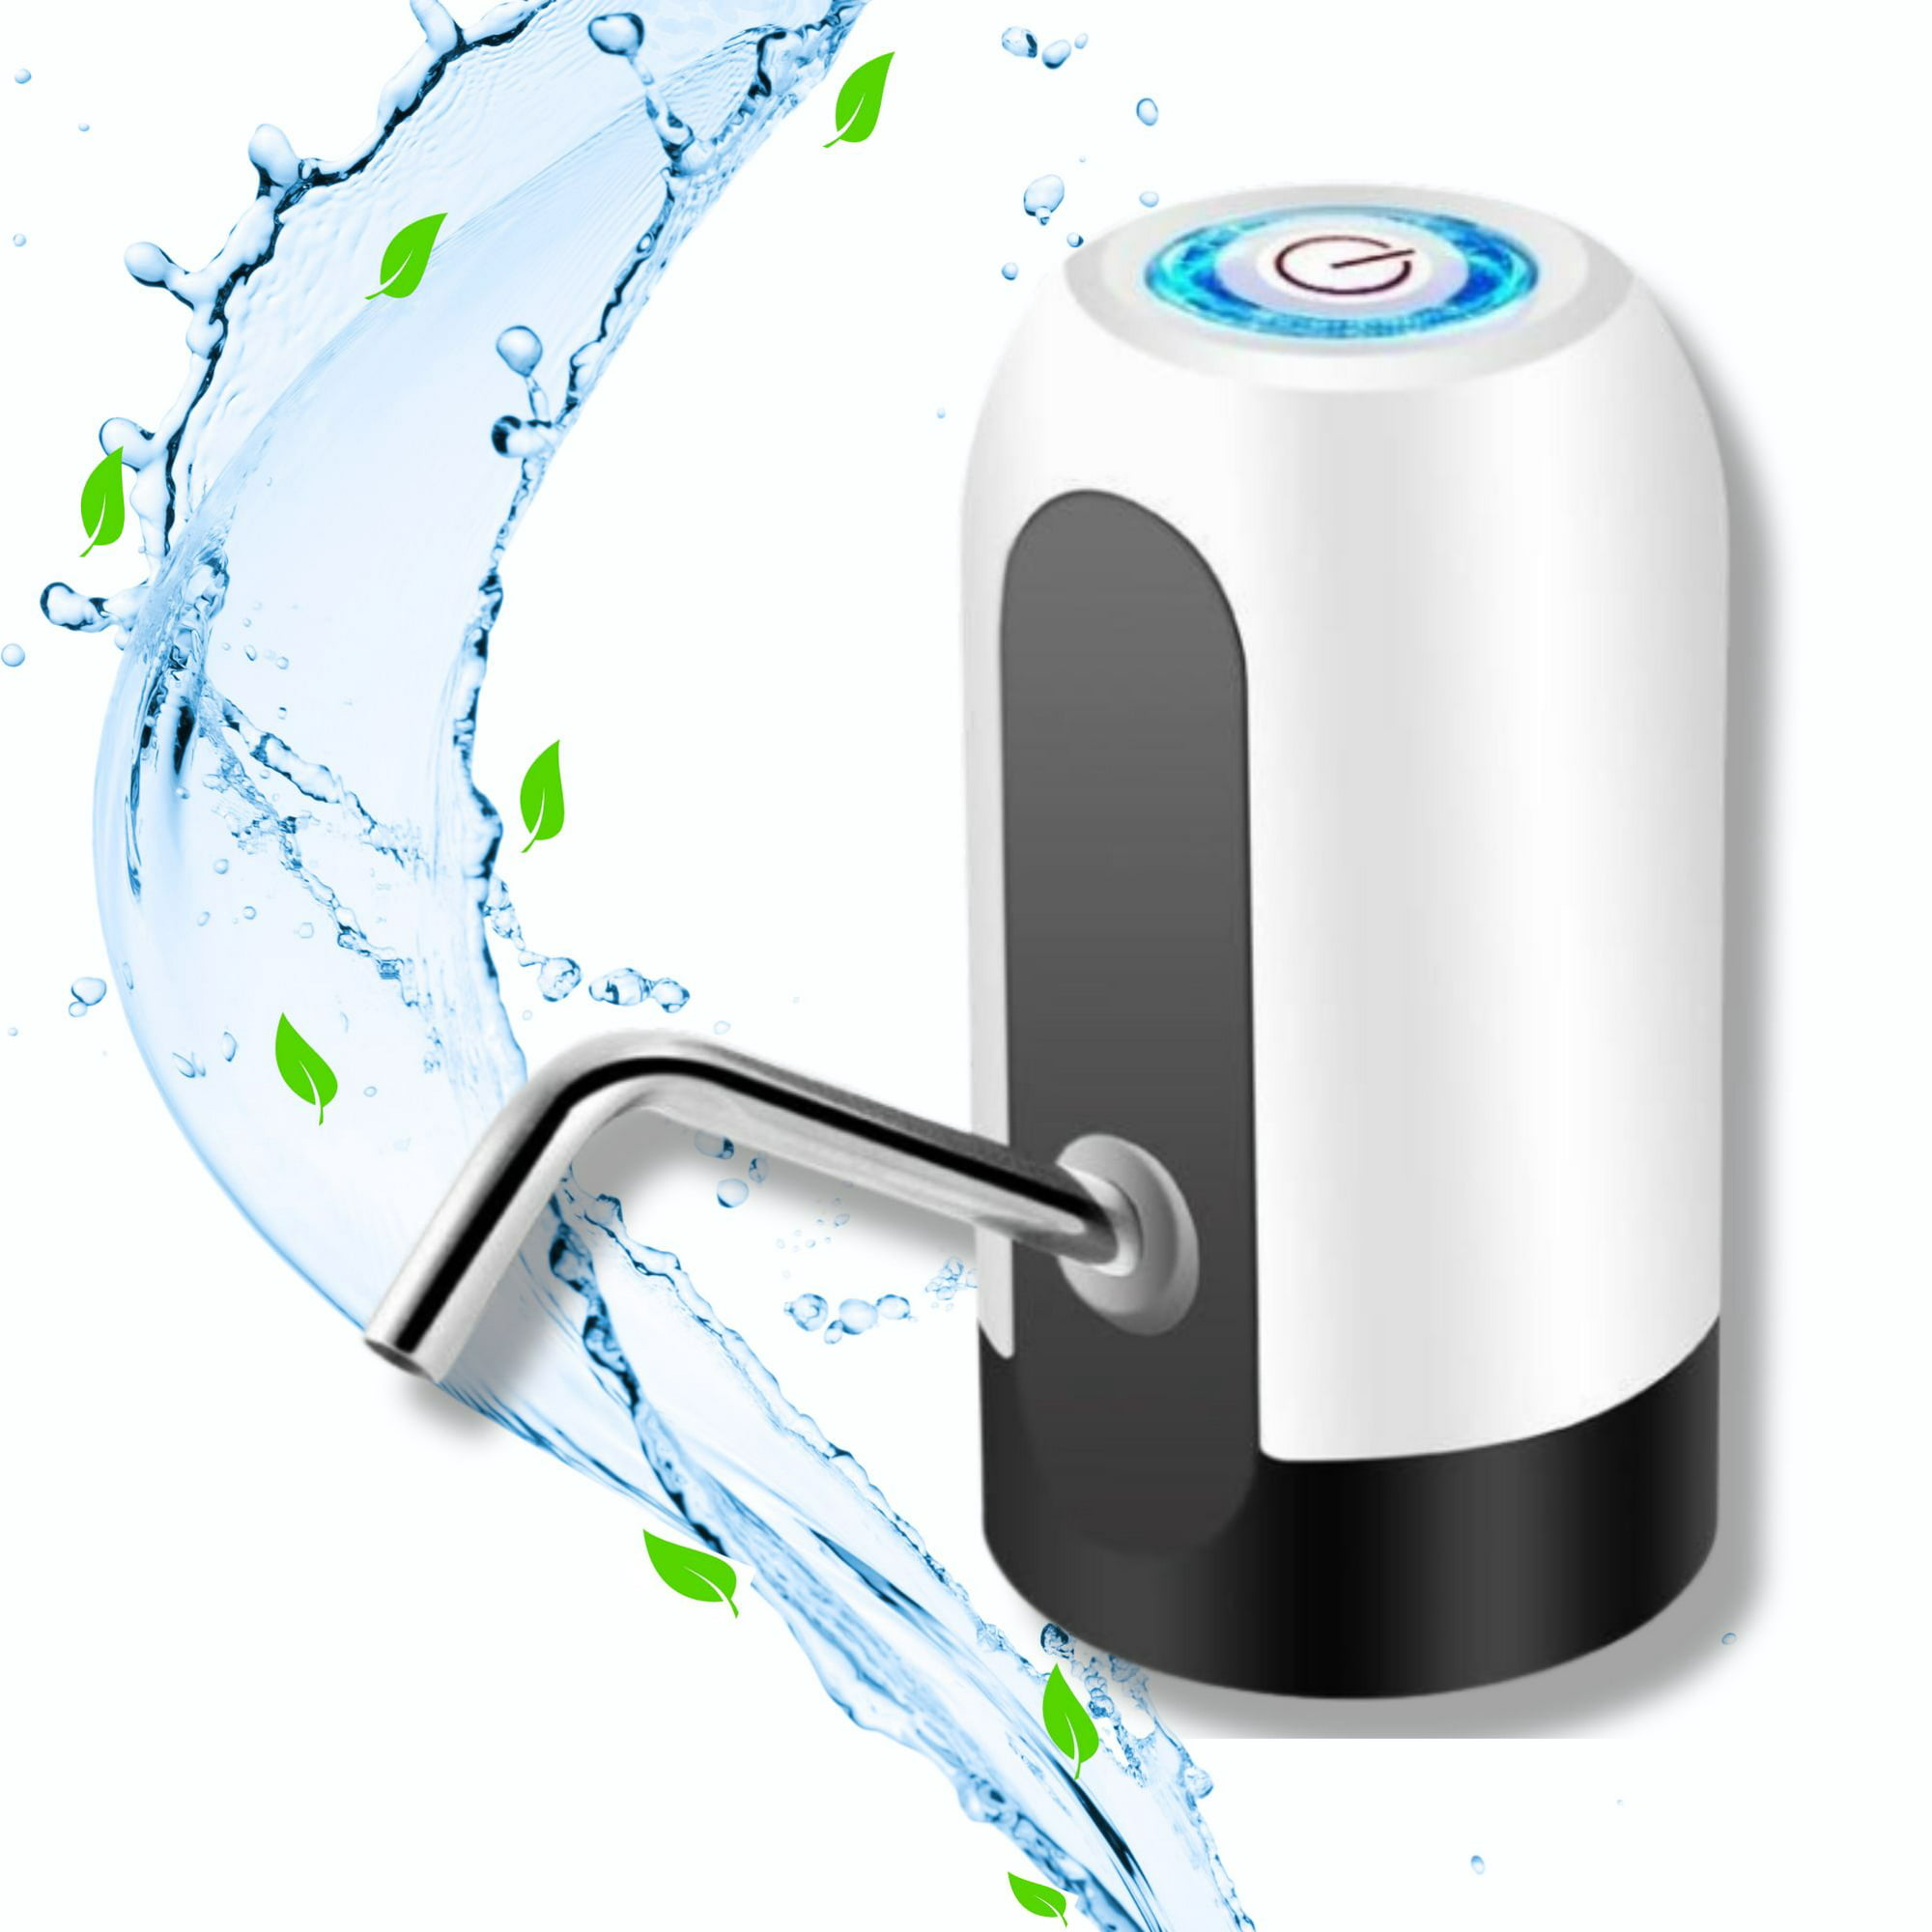 Dispensador eléctrico de agua fría y caliente para encimera — Avera